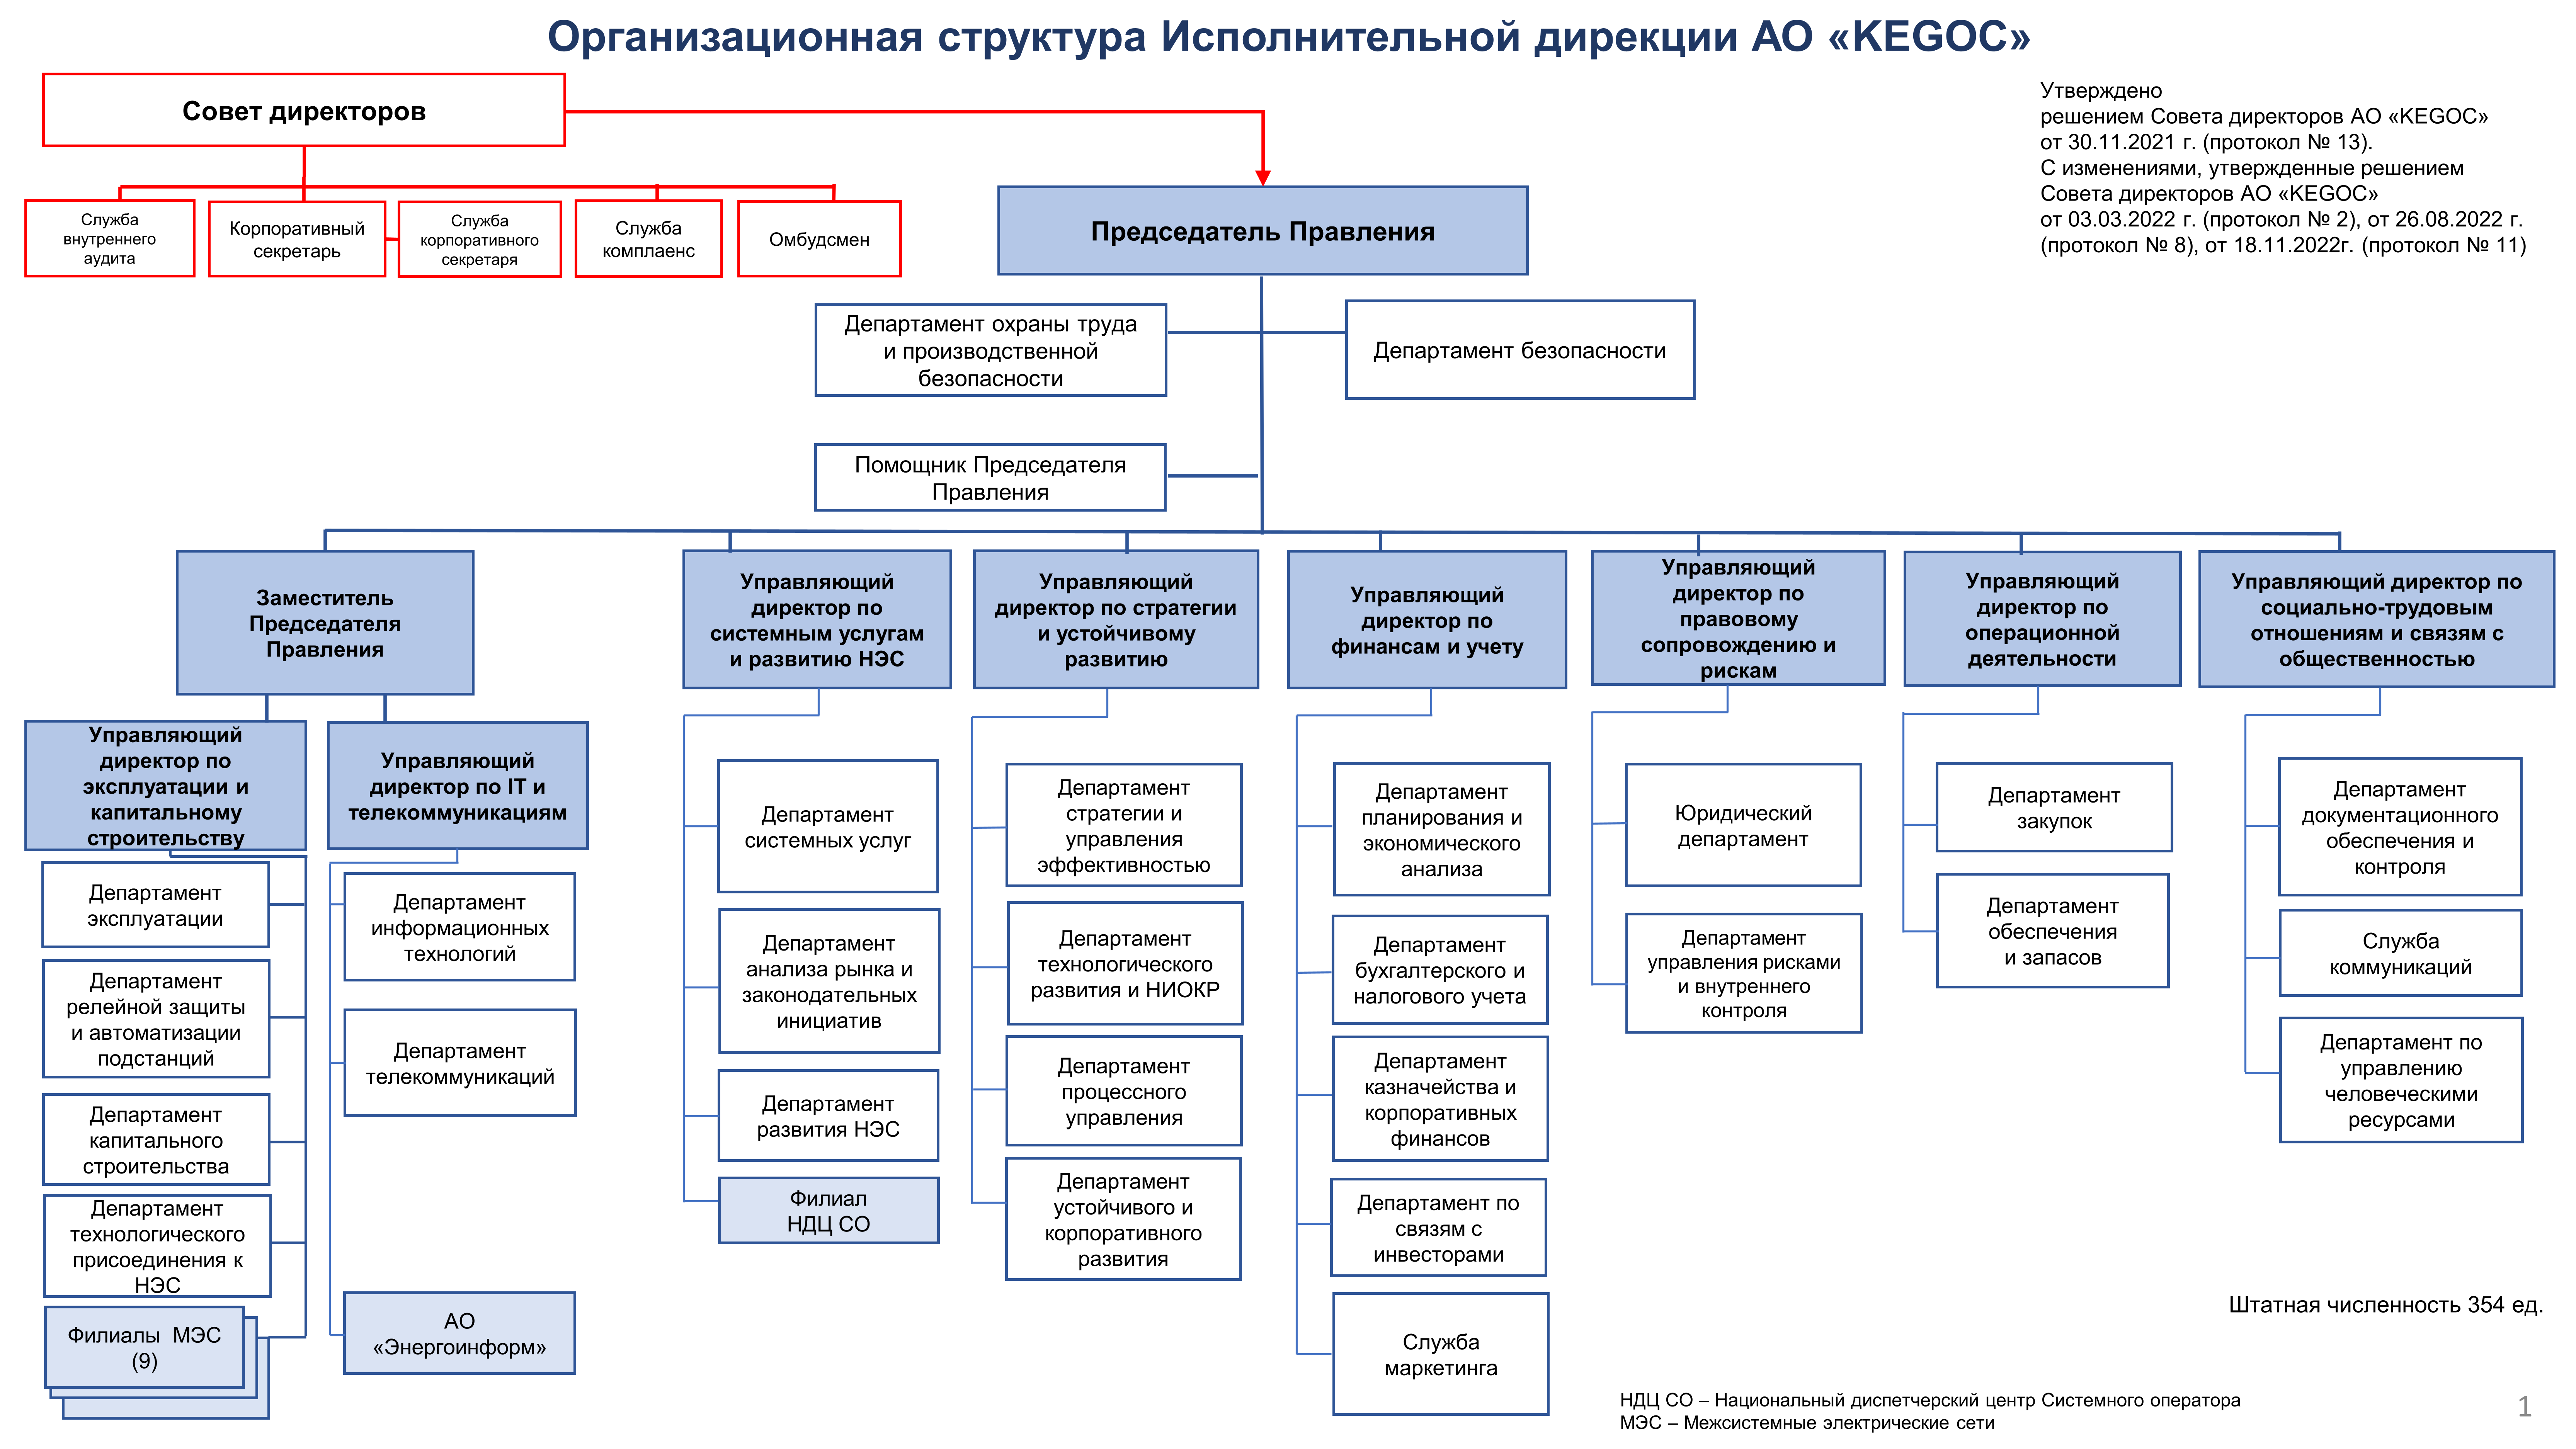 Организационная структура Исполнительной дирекции АО «KEGOC»